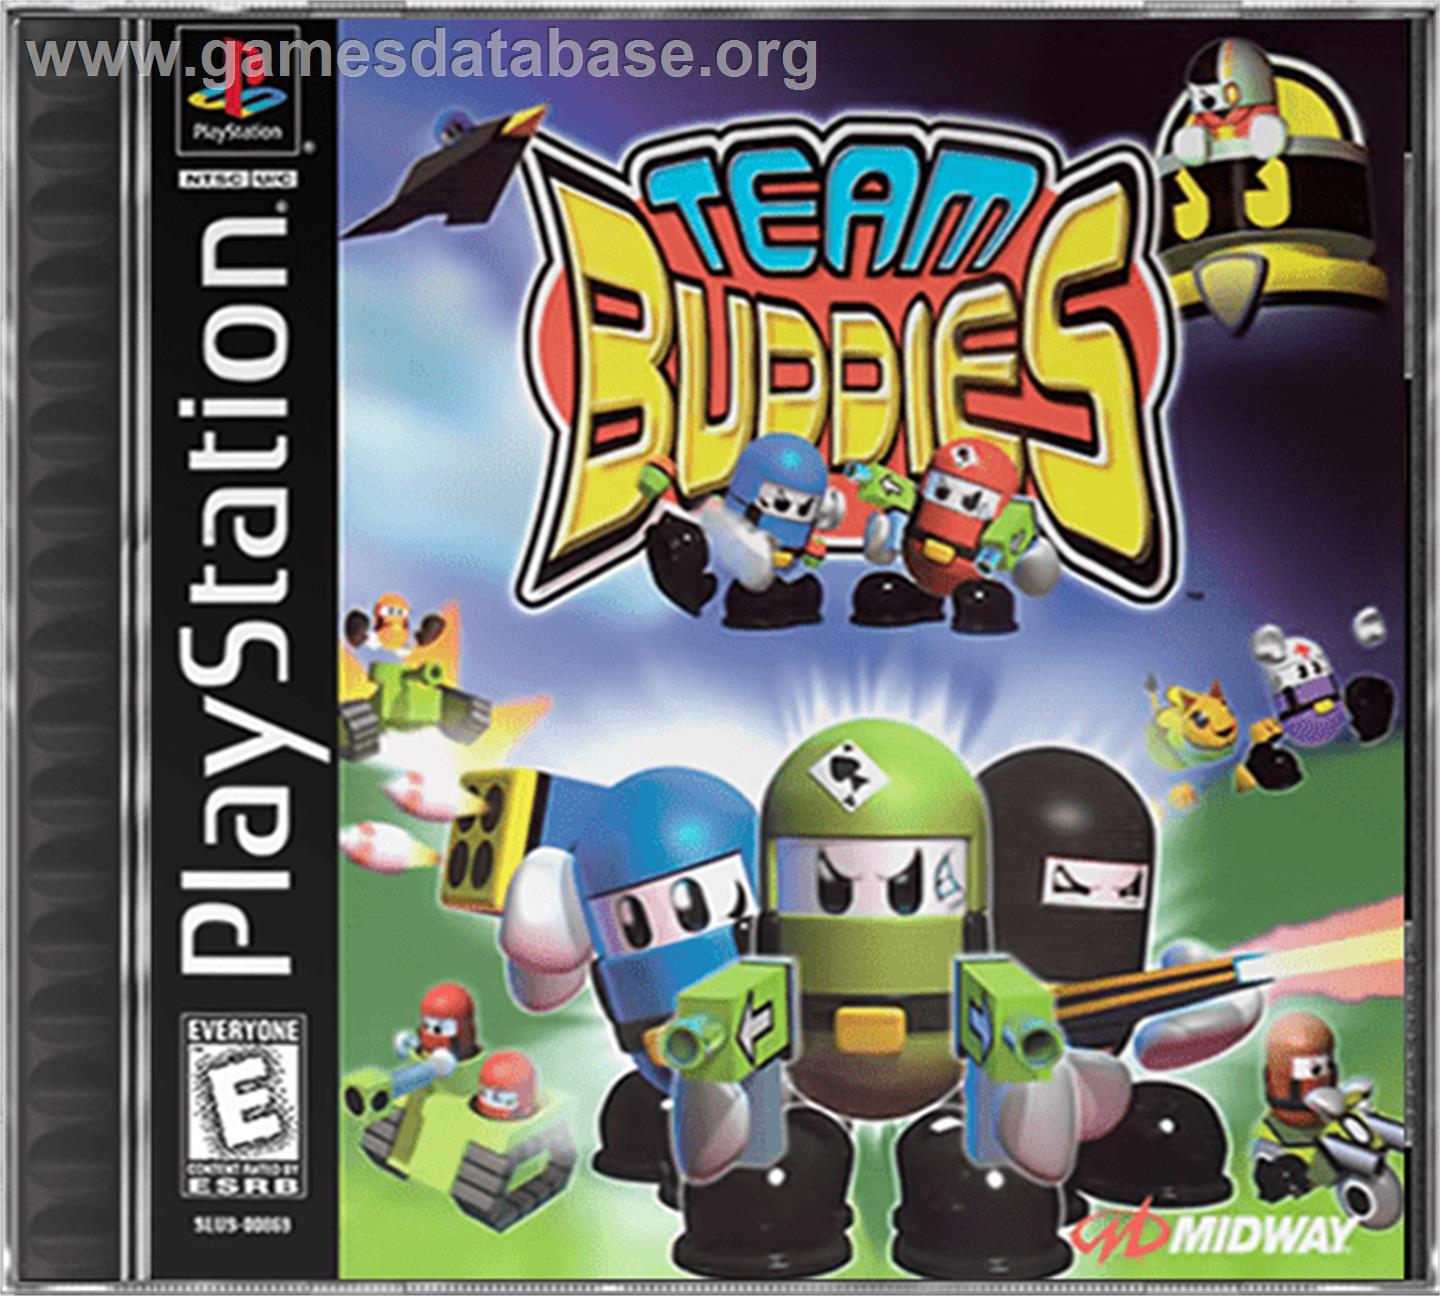 Team Buddies - Sony Playstation - Artwork - Box